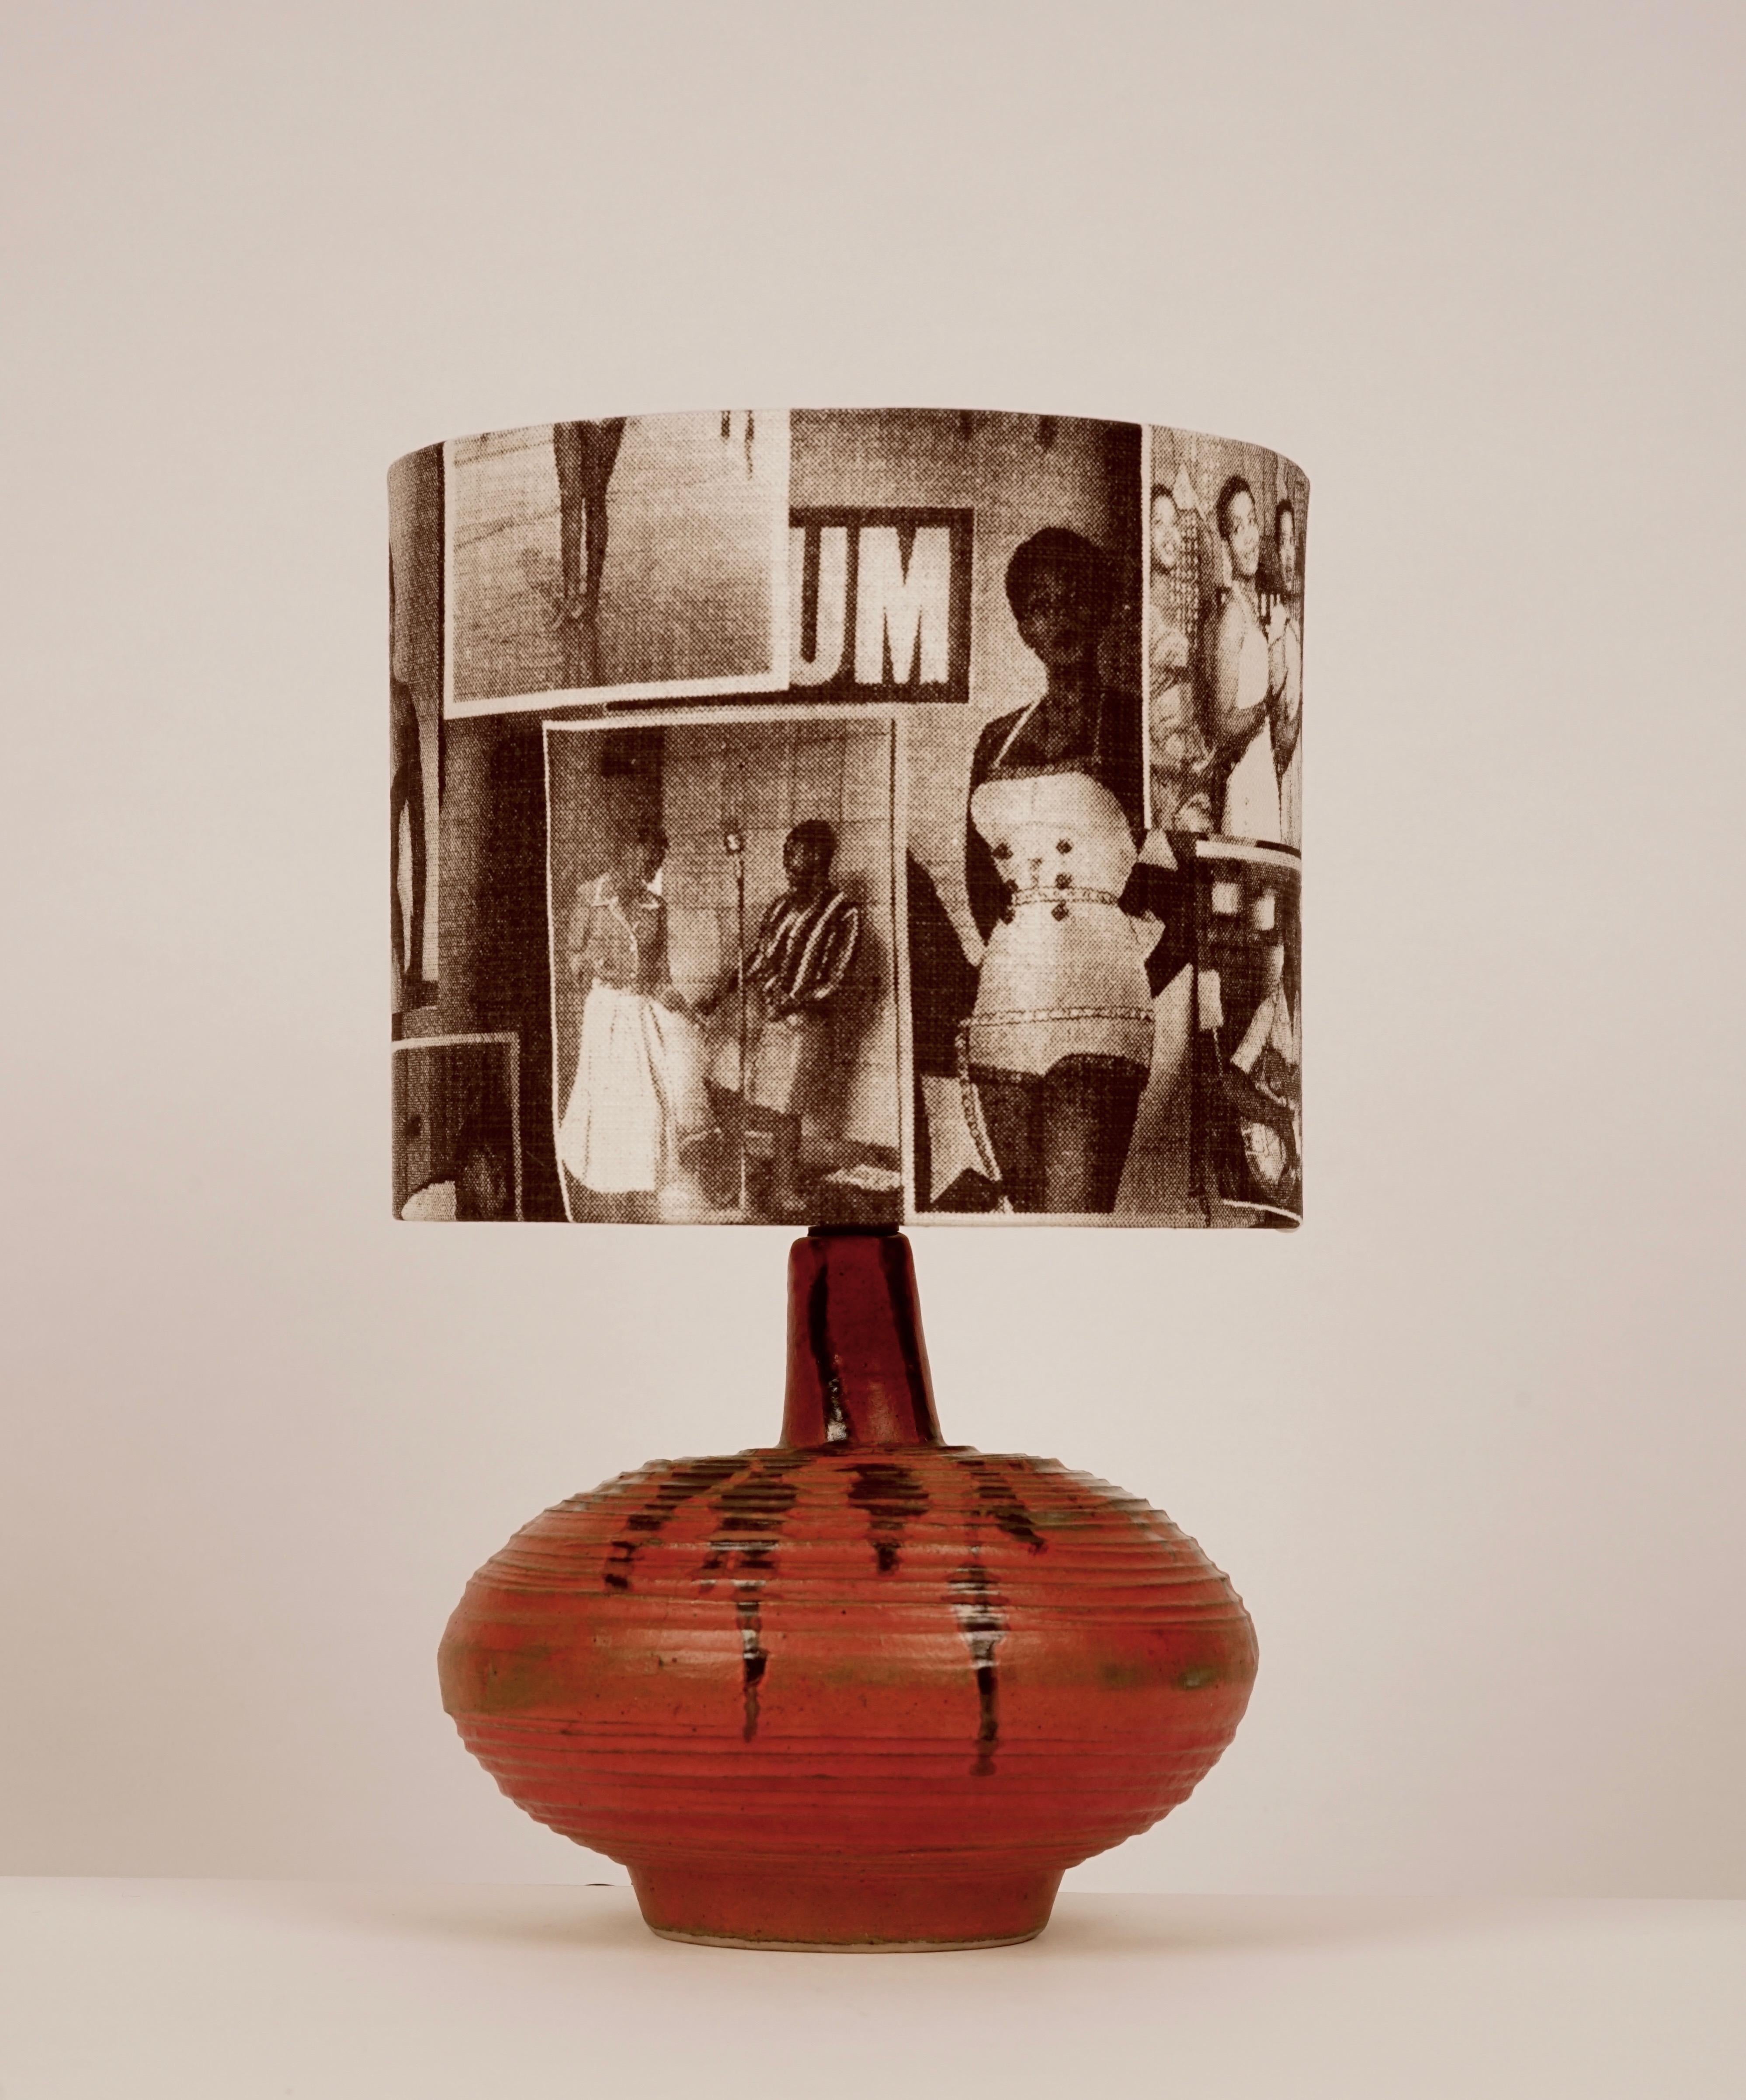 La base de la lampe provient de l'époque de la céramique du studio hongrois, années 1950. La céramique formée à la main est en verre orange avec des accents sombres. 
L'abat-jour a été recouvert d'un tissu en coton avec des motifs du magazine Drum.